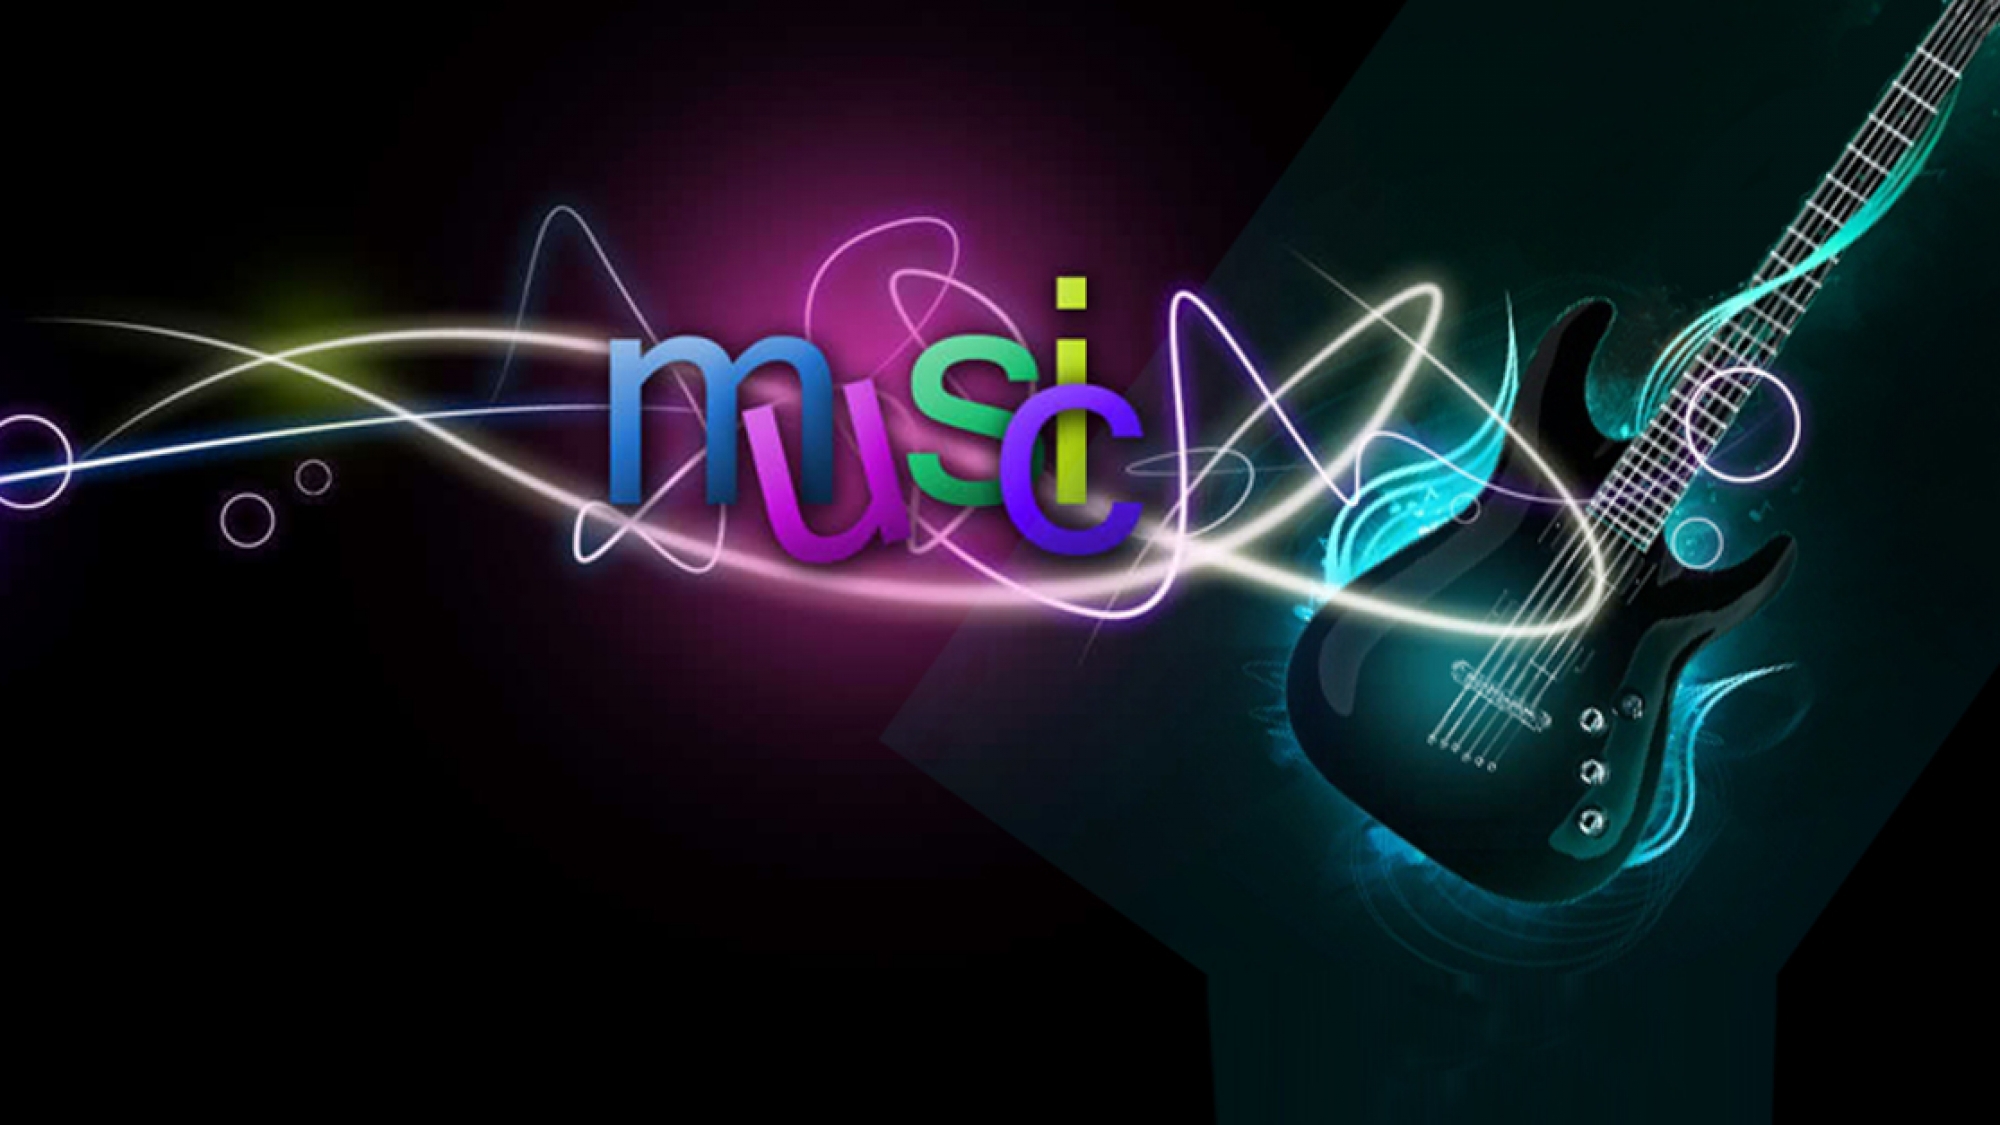 Musica music